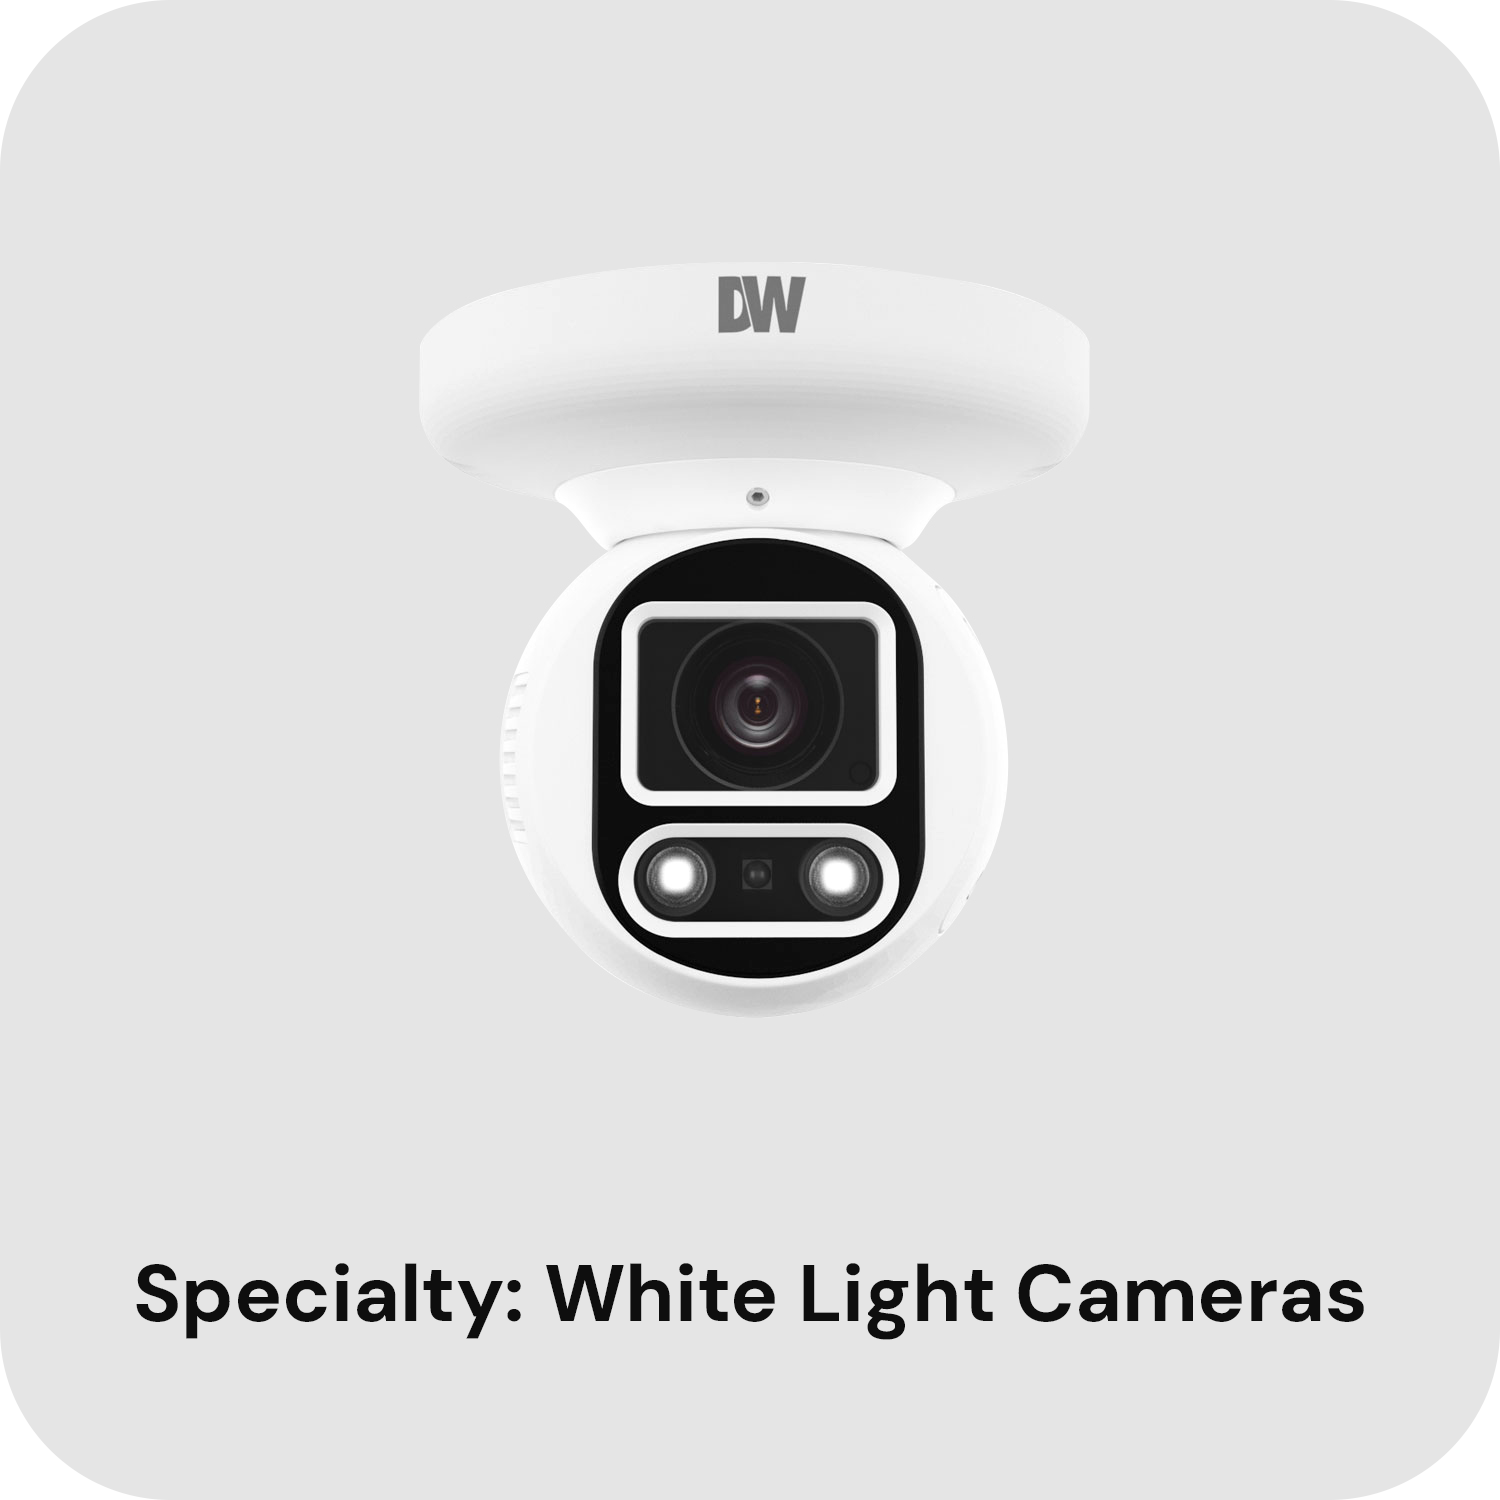 White Light Cameras